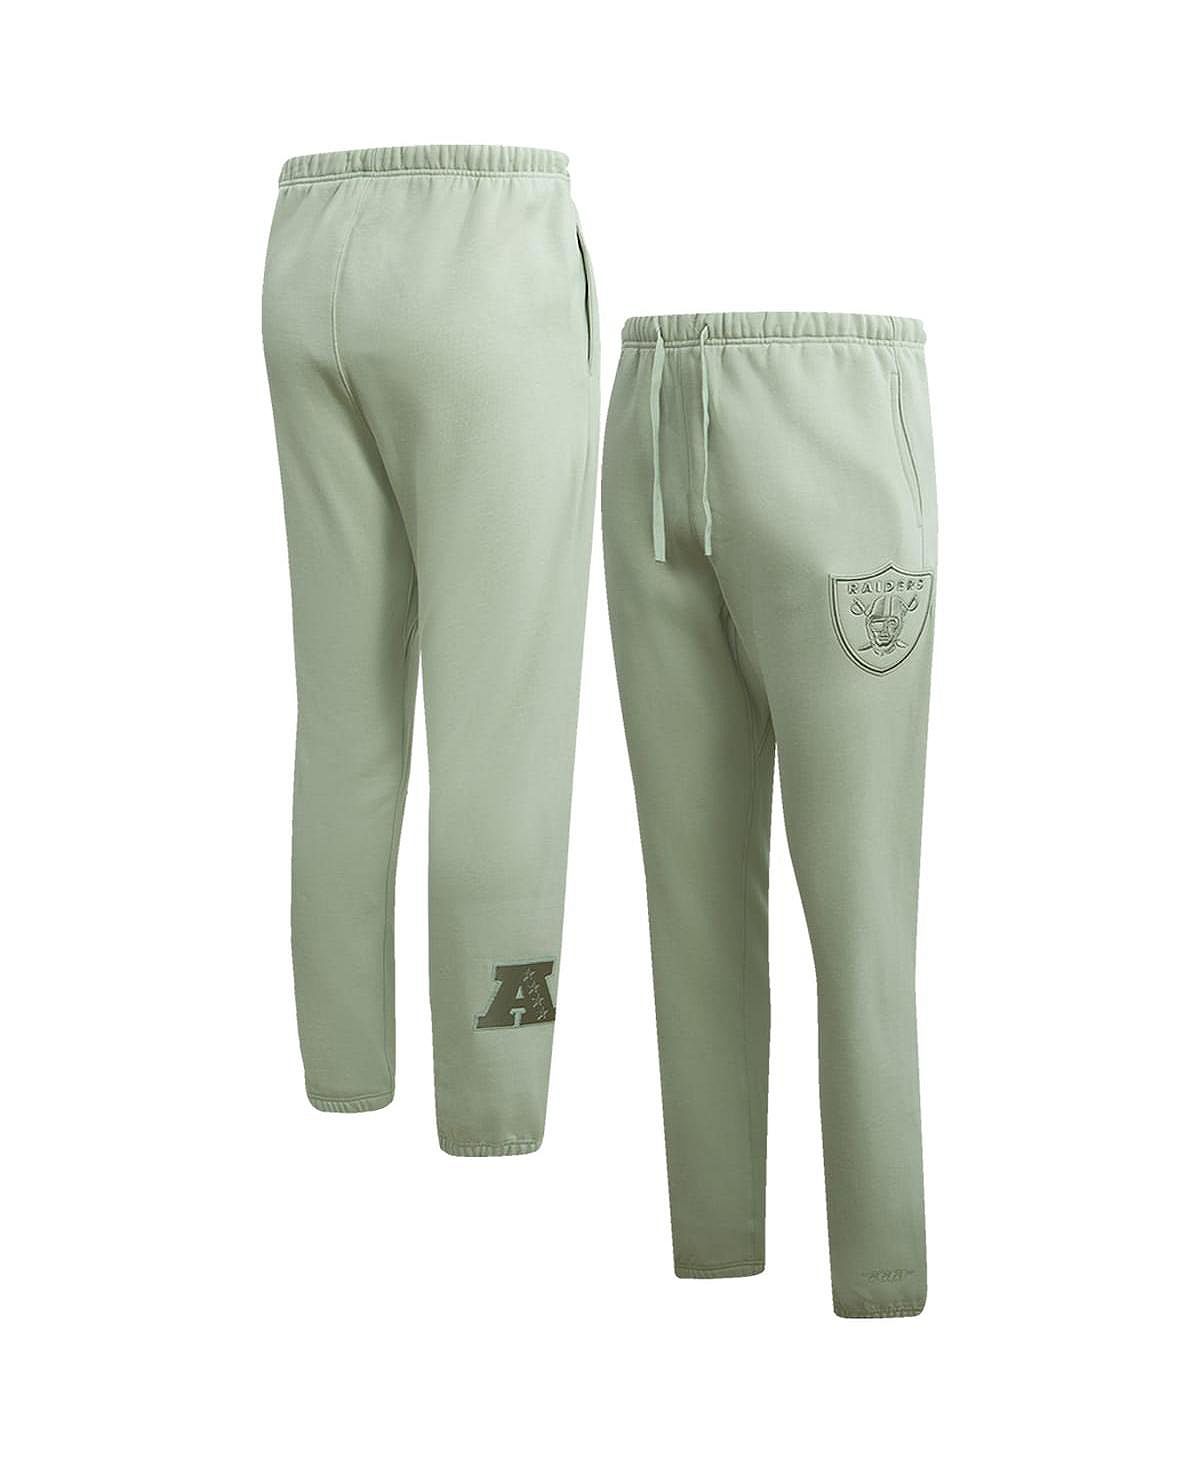 цена Мужские светло-зеленые флисовые спортивные штаны нейтрального цвета Las Vegas Raiders Pro Standard